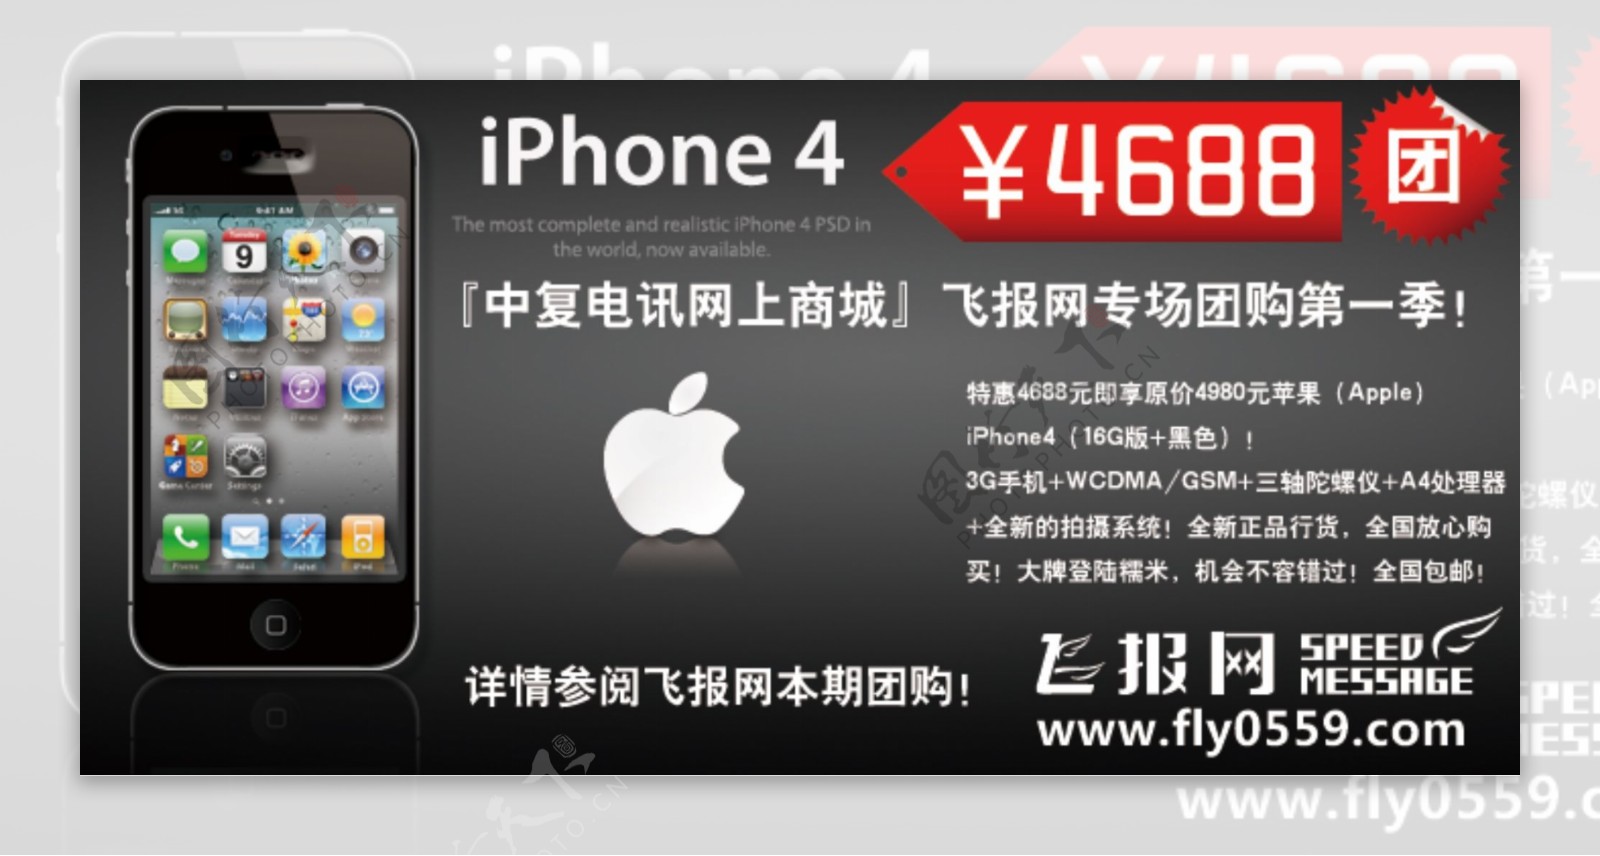 iphone4促销图昂够广告图片